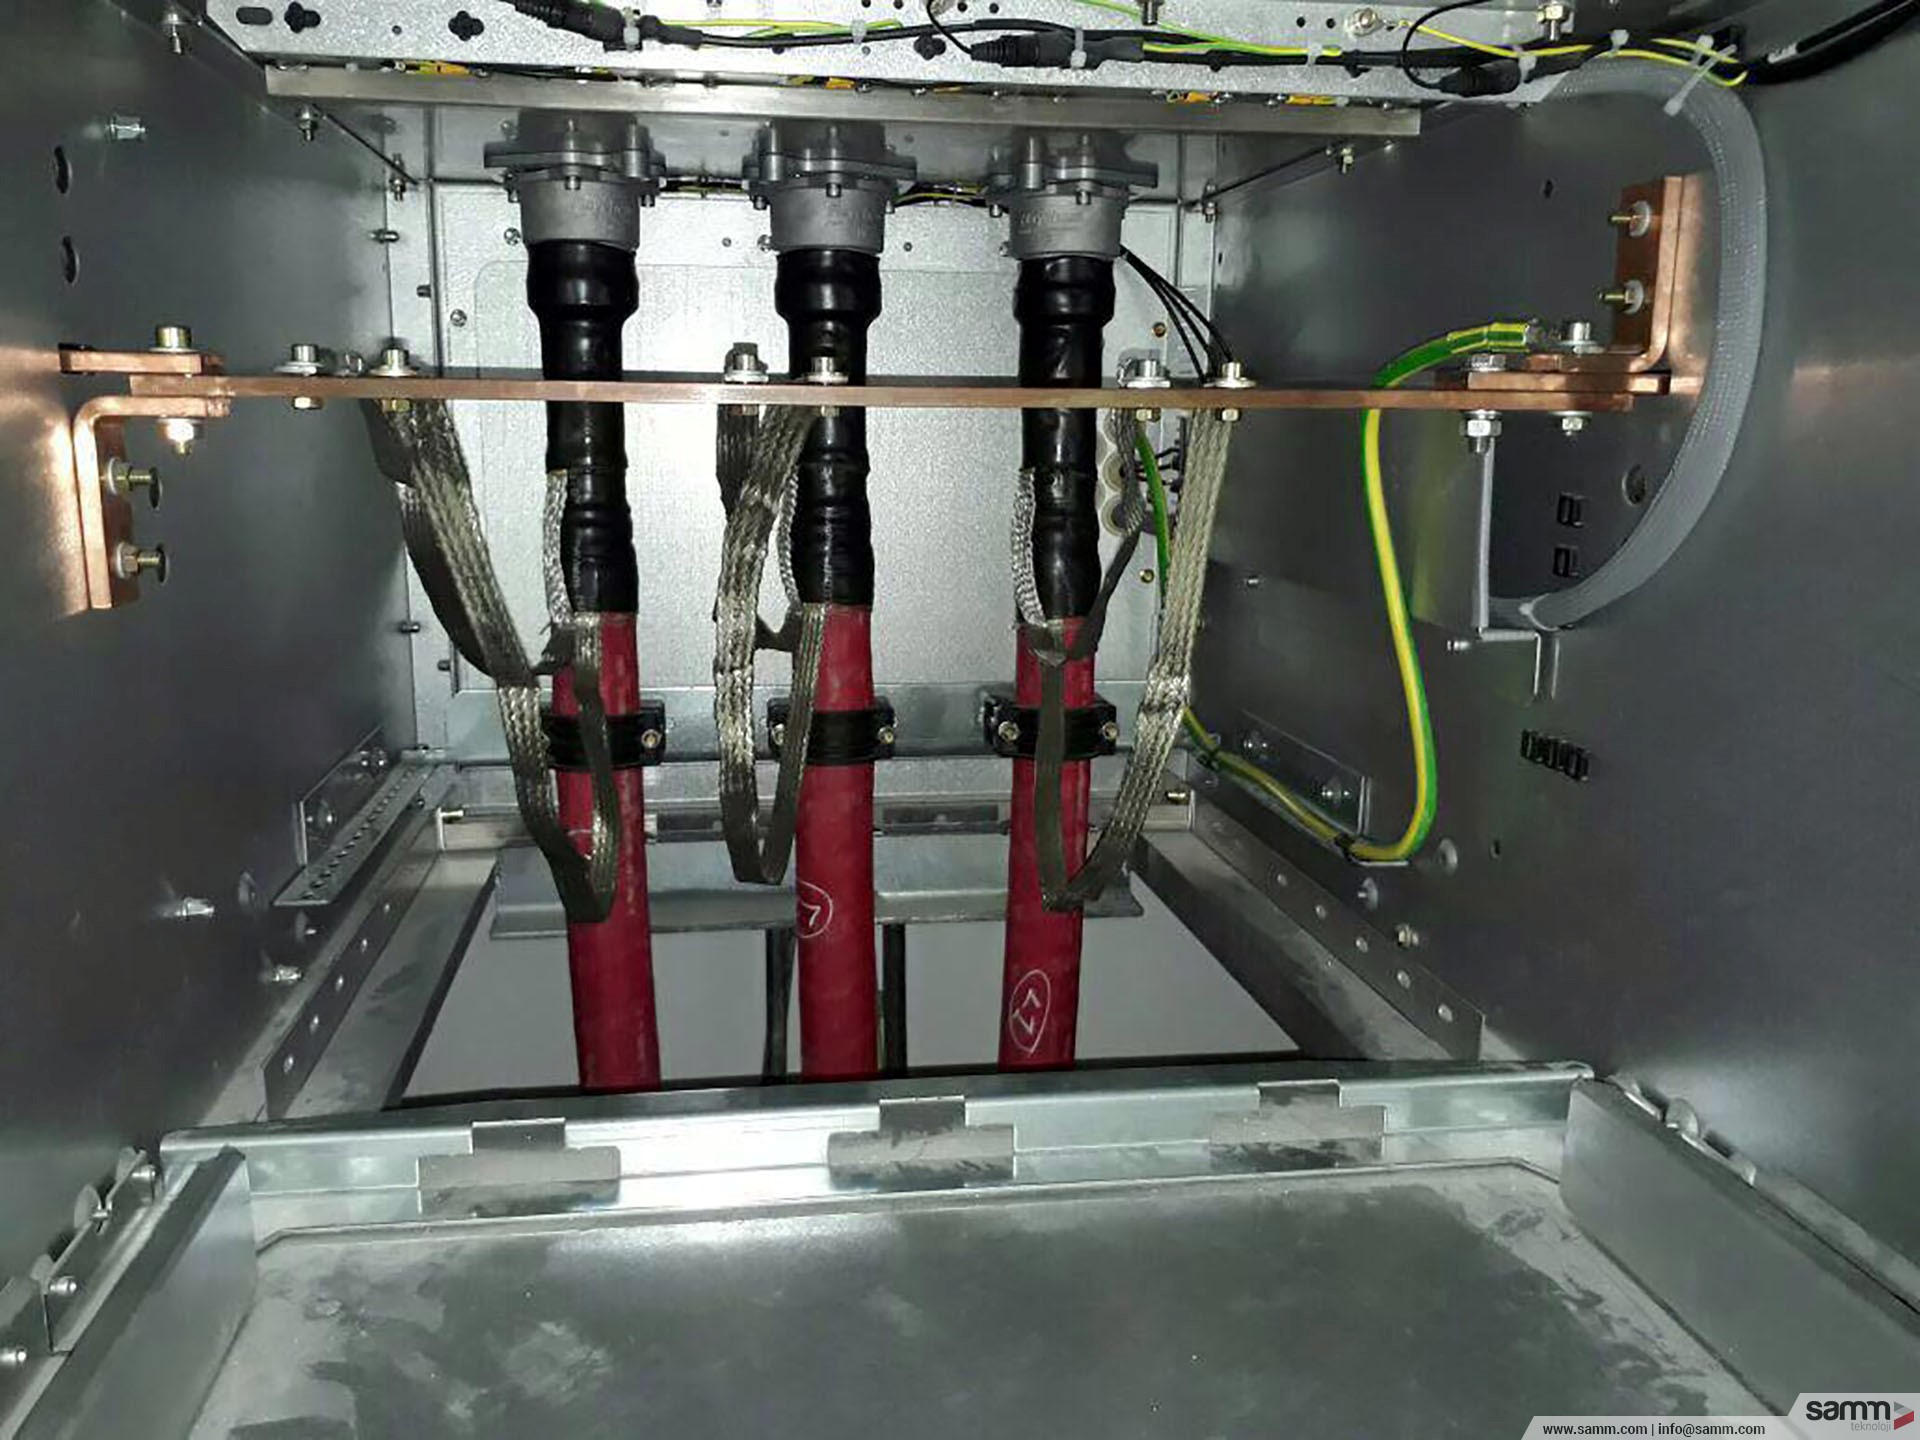 Samm Teknoloji | Bina içi 34,5 kV kesici ayırıcı hücreler için plug in başlık montajı.